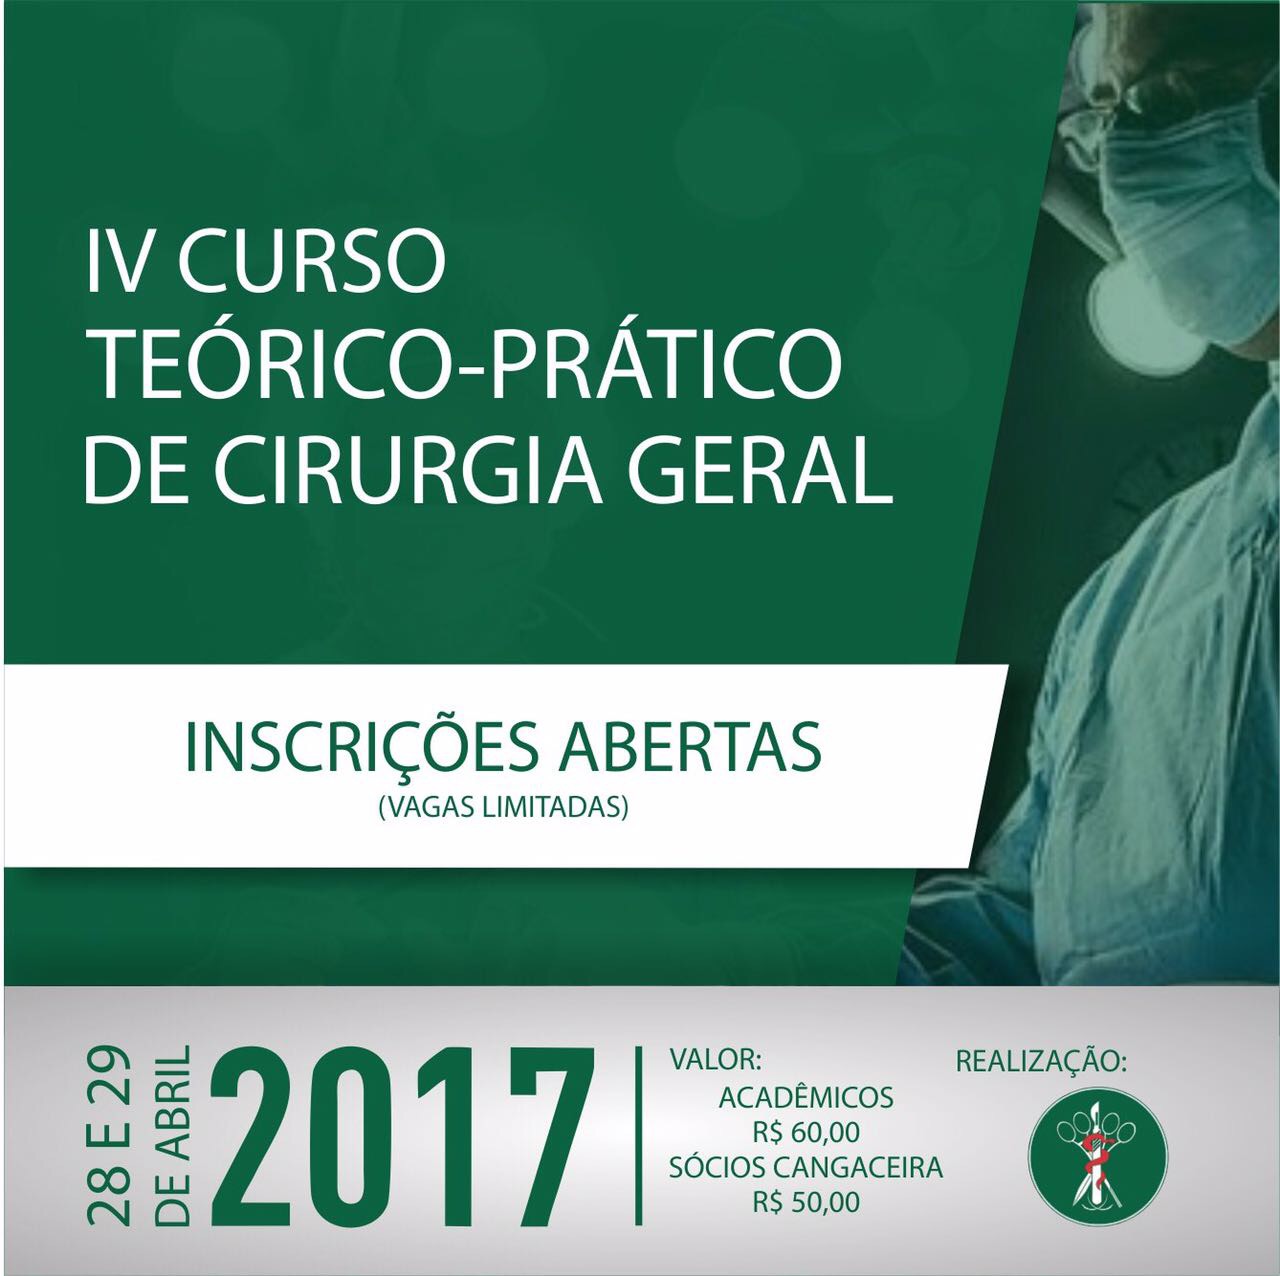 Inscrições abertas para o IV Curso Teórico-Prático de Cirurgia Geral